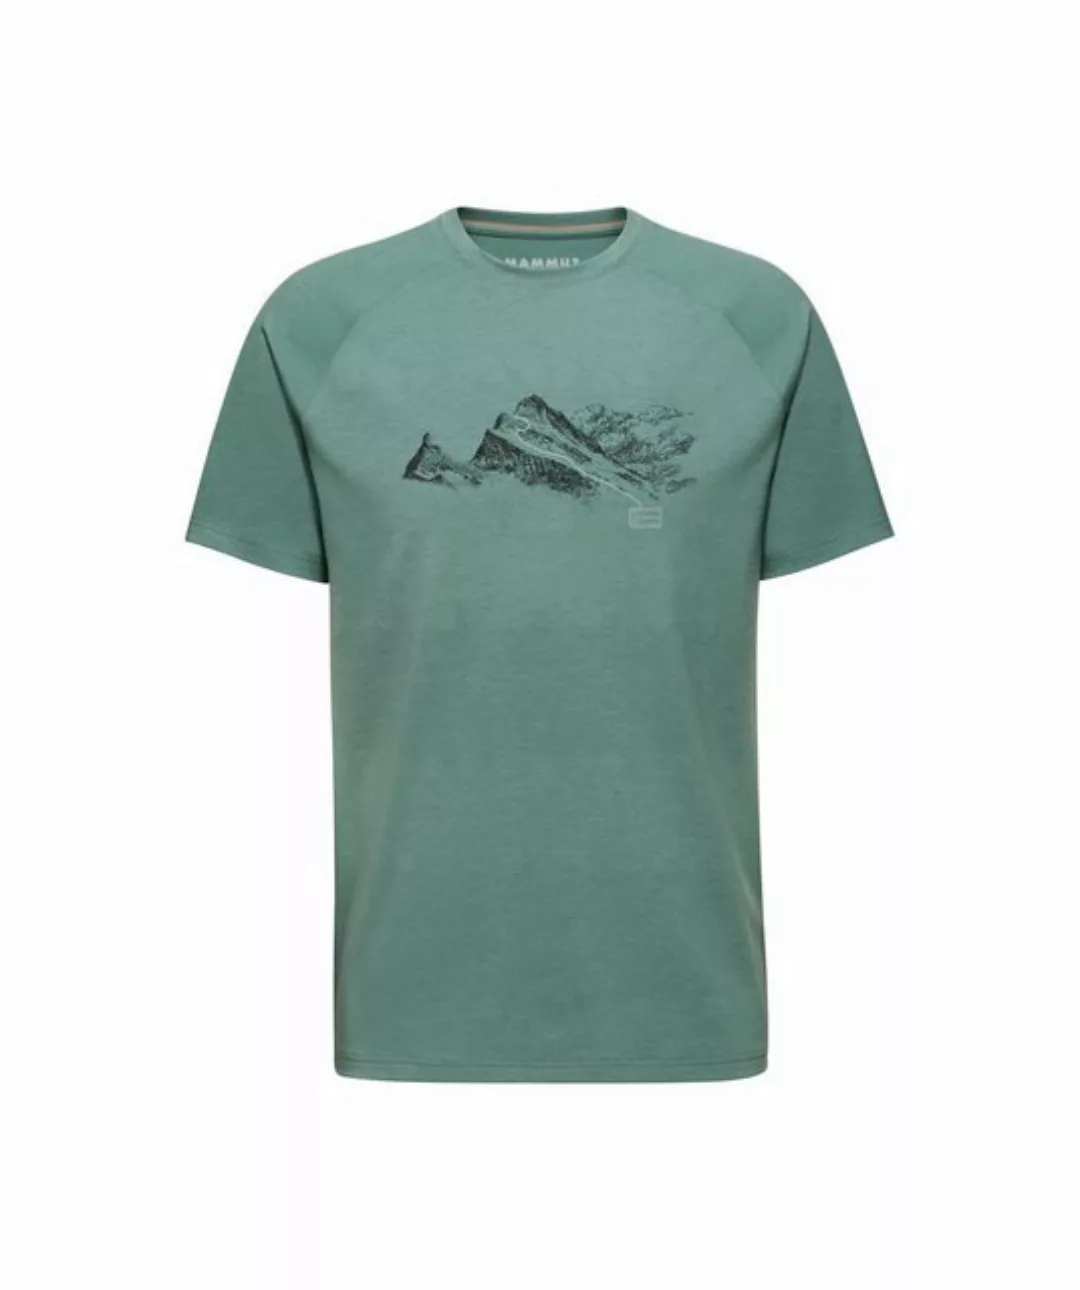 Mammut T-Shirt Shirt Finsteraarhorn günstig online kaufen